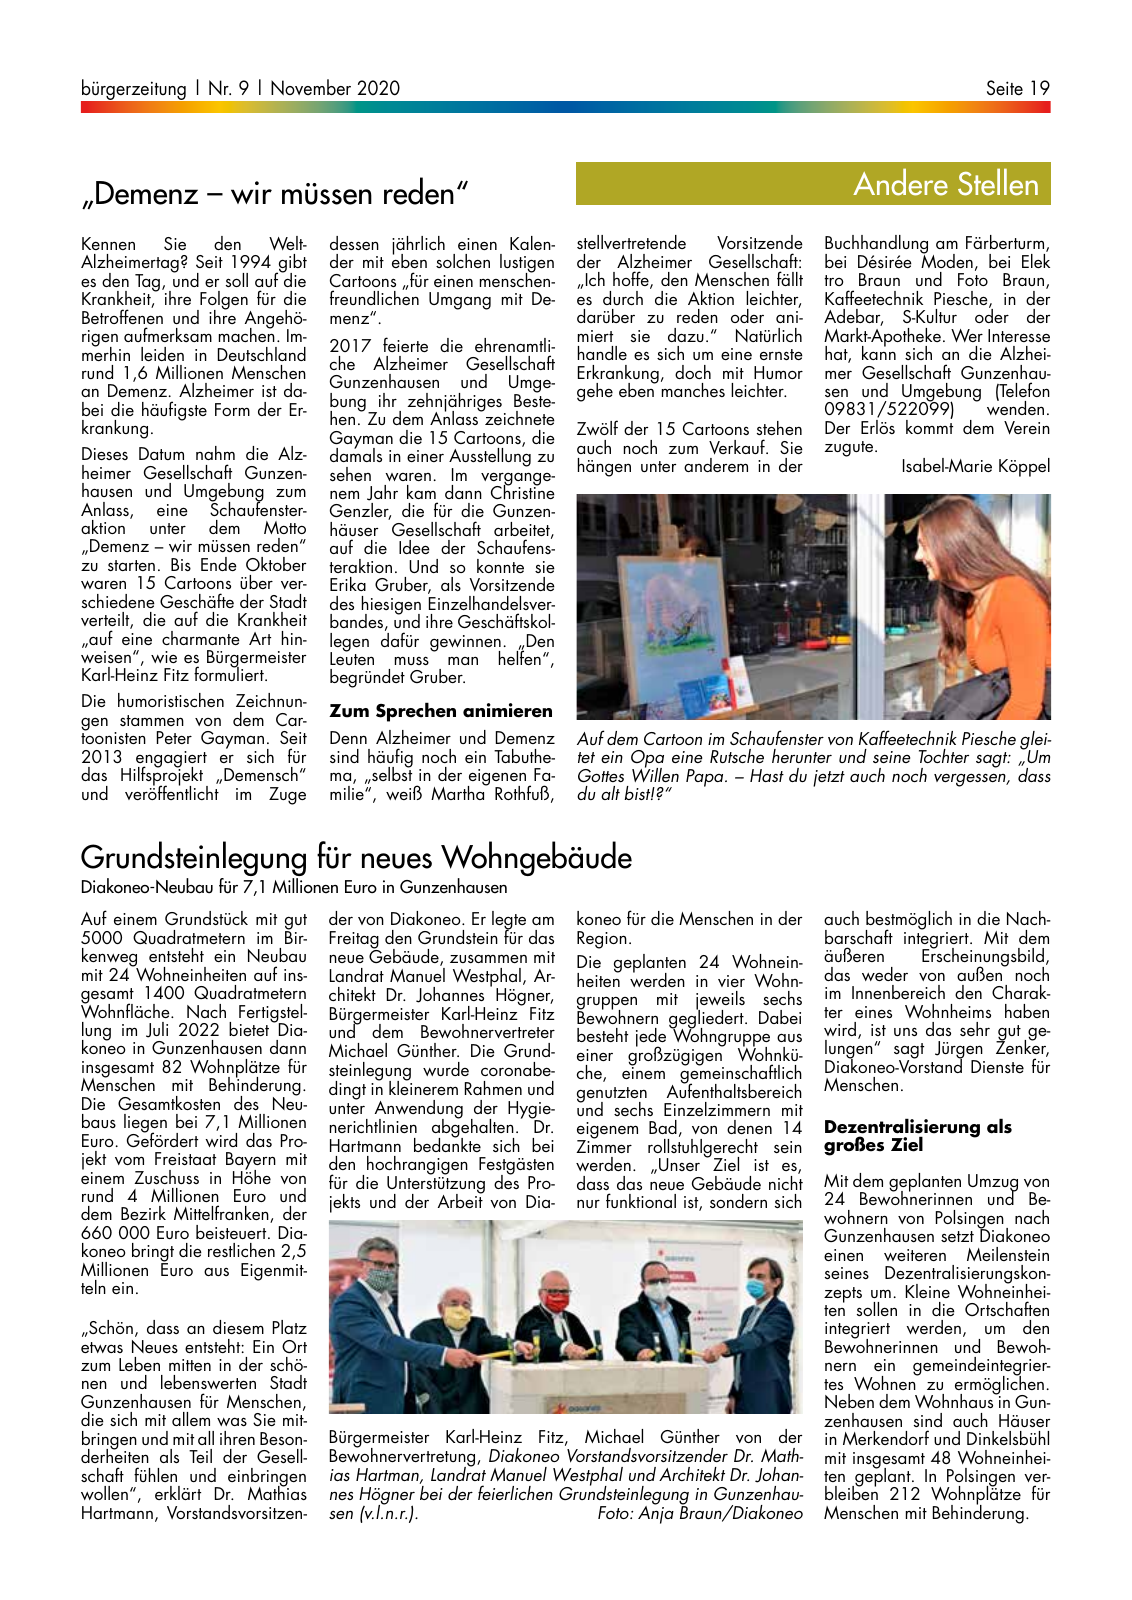 Vorschau buergerzeitung_09_2020 Seite 19